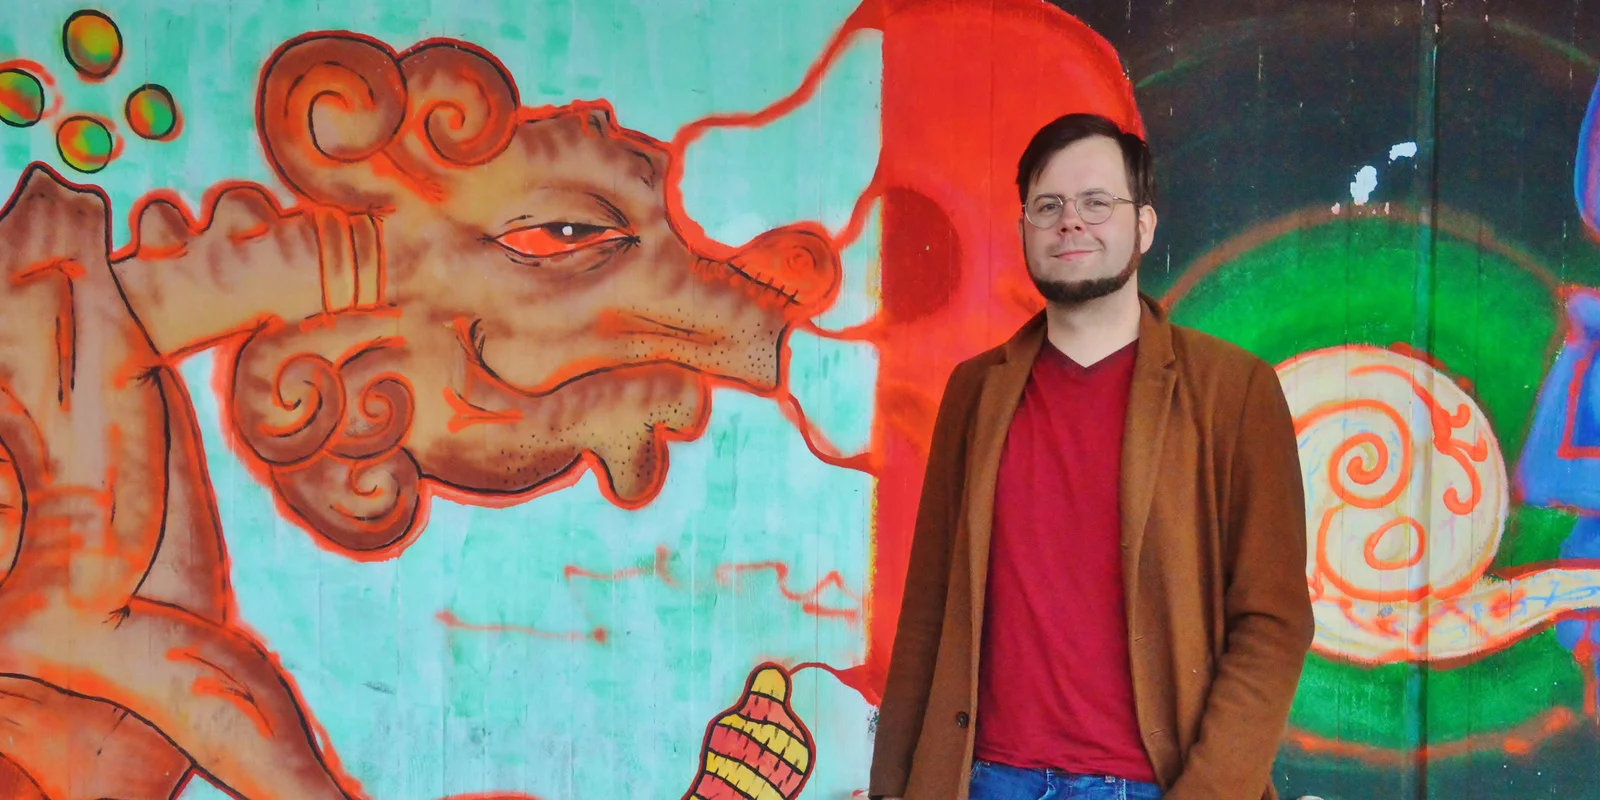 Florian Schäfer steht lächelnd vor einer Wand mit Graffiti-Kunst.